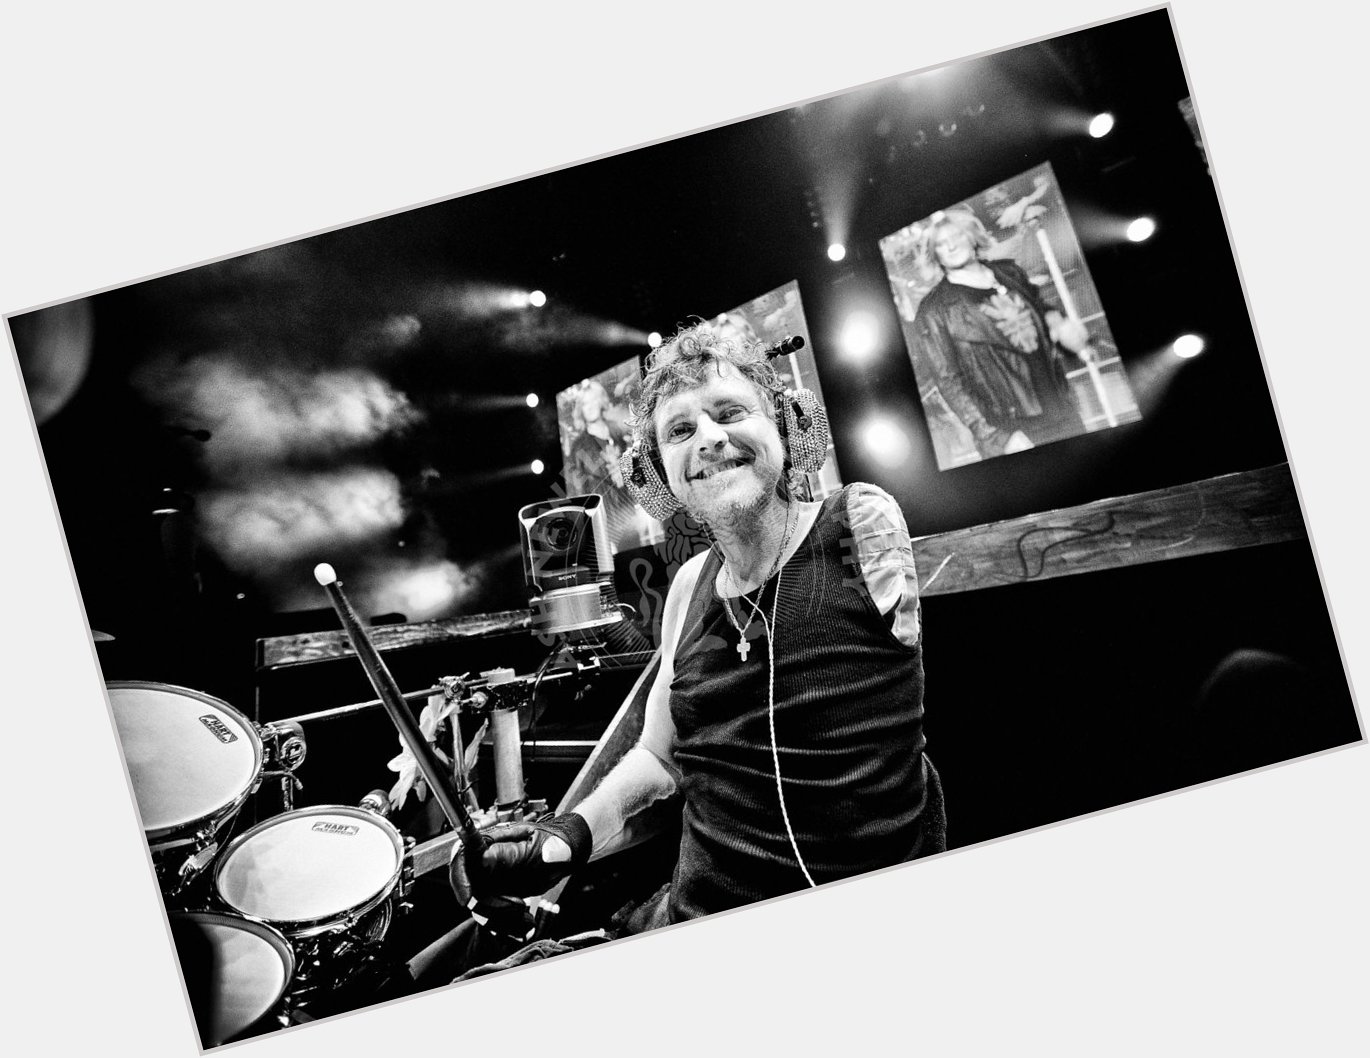 Happy birthday to drummer, Rick Allen! 